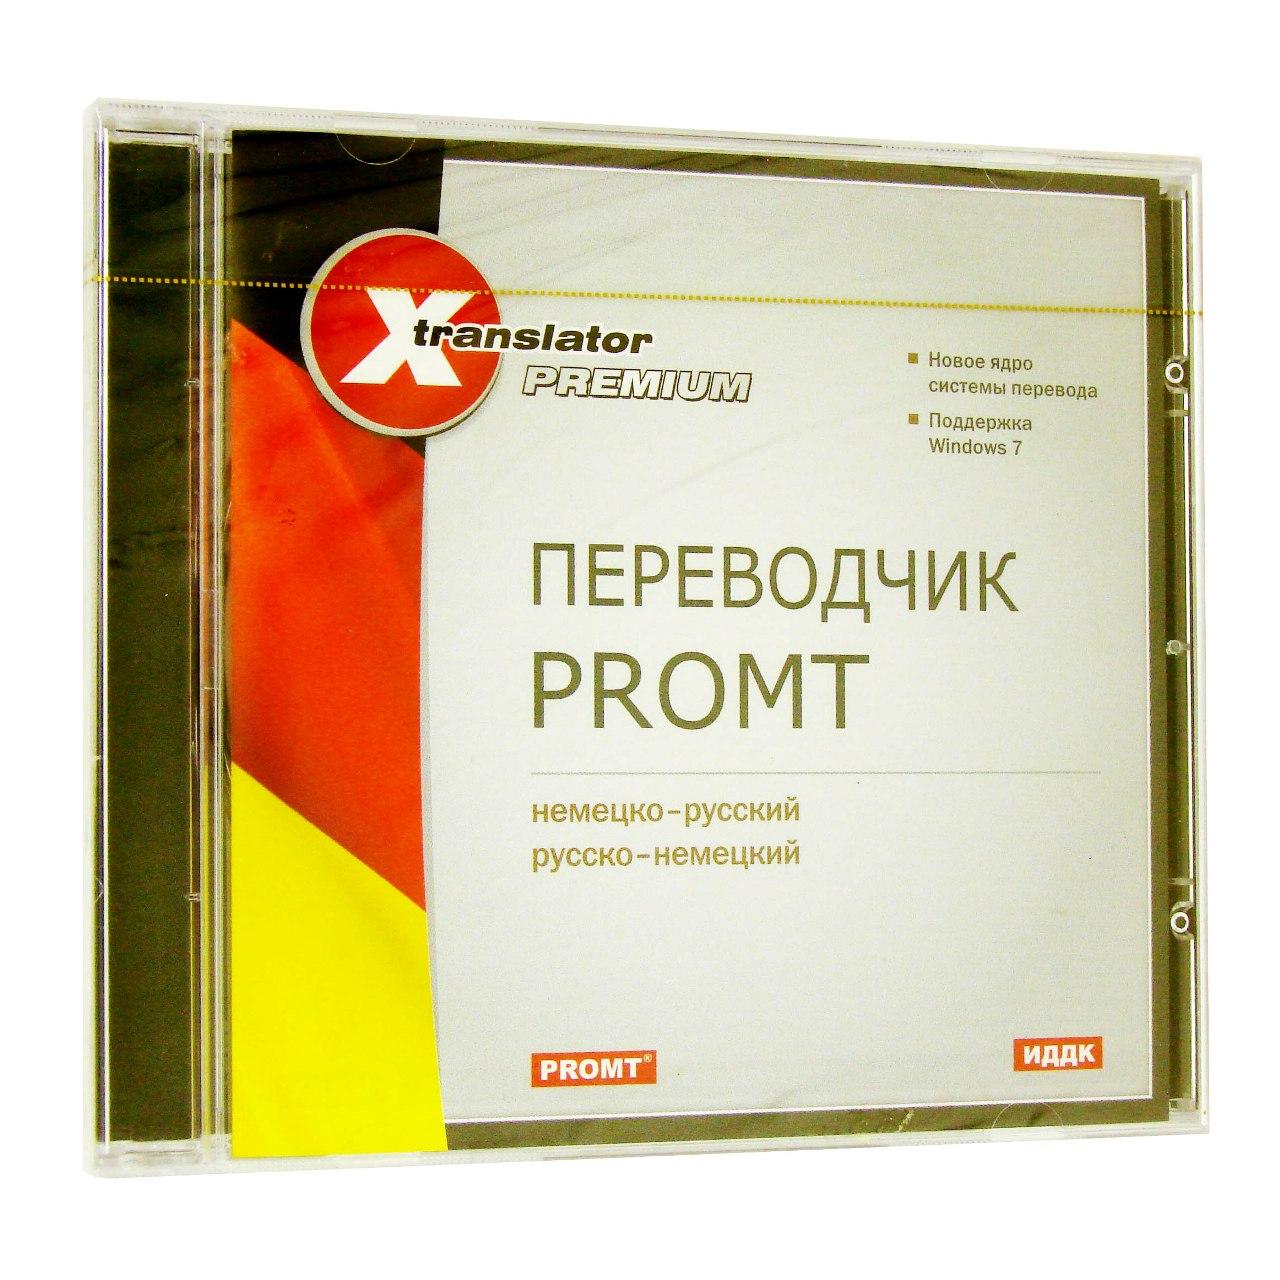 Компьютерный компакт-диск X-Translator Premium. Переводчик Promt: Немецко-русский, русско-немецкий (ПК), фирма "ИДДК", 1CD